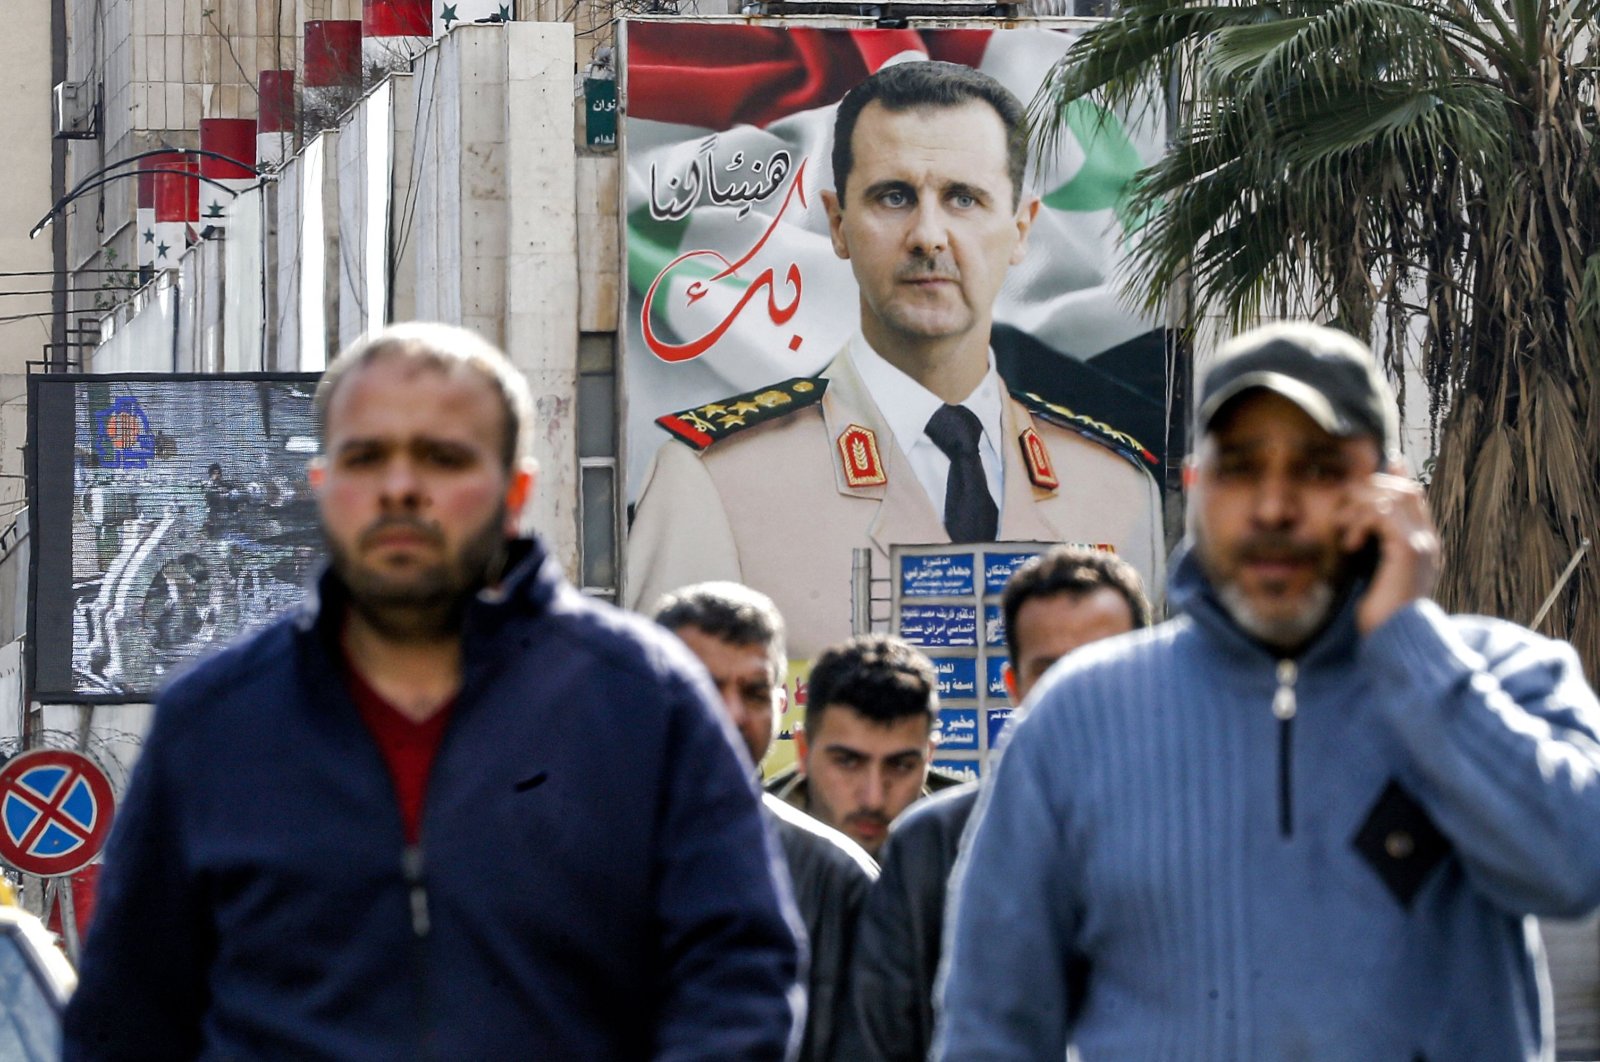 Kasus menumpuk di Eropa terhadap penyiksaan yang disponsori rezim Assad